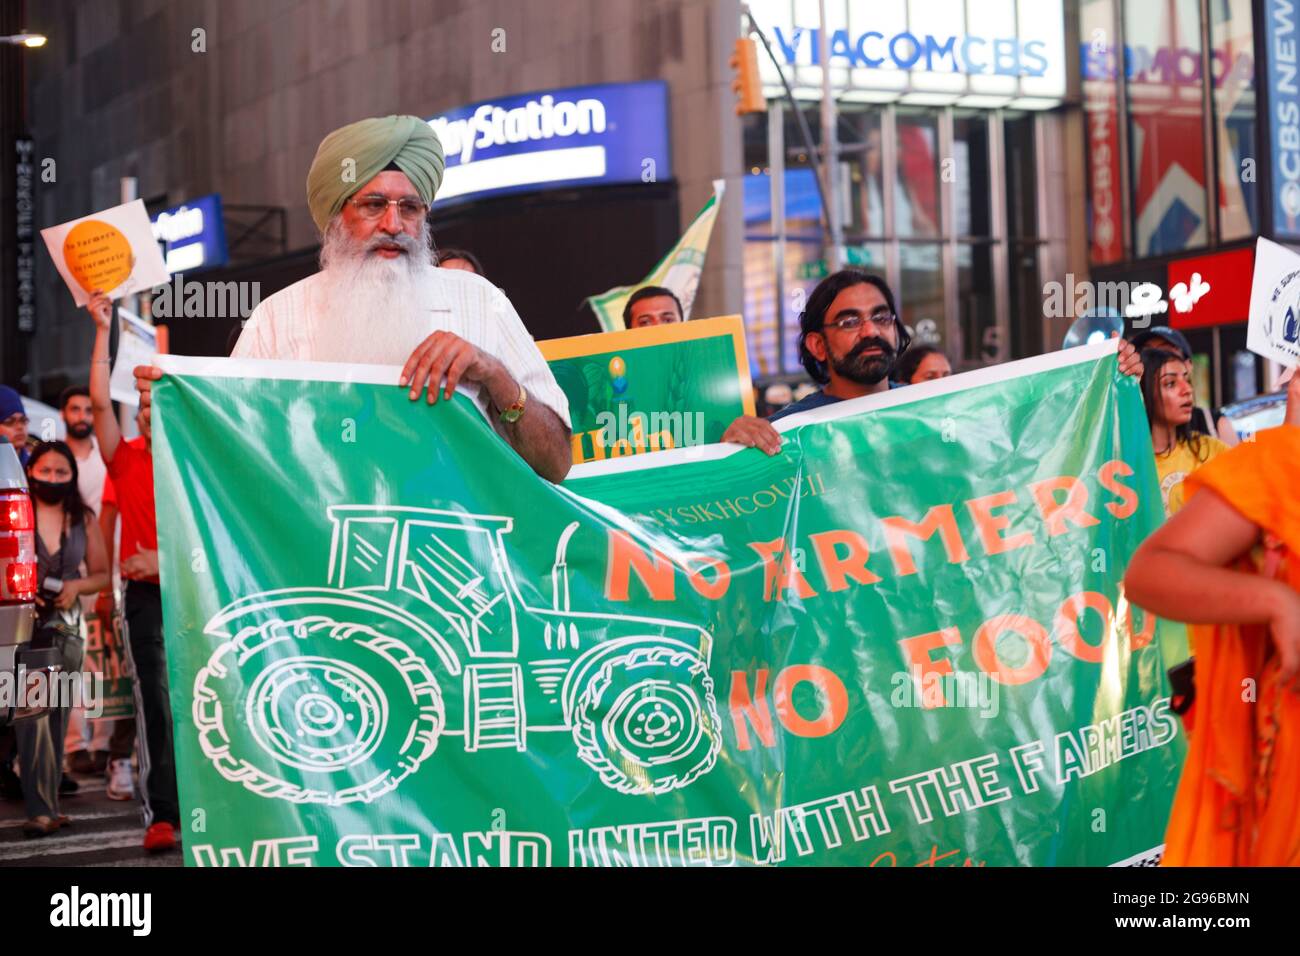 ¡Los manifestantes sostienen una bandera que dice No Farmers! ¡No hay comida! Durante la manifestación, el Consejo Sikh de Nueva York protestó en solidaridad con los agricultores que protestaban en la India contra las tres nuevas leyes que desregulan el sector agrícola en la India. Estas nuevas leyes eliminan los subsidios gubernamentales para los agricultores que garantizan un precio mínimo para ciertos cultivos, eliminan la infraestructura gubernamental para la tenencia de los cultivos de los agricultores y obligan a los agricultores a tratar con las empresas privadas como trabajadores contratados sin mucho recurso legal contra las empresas privadas. Foto de stock